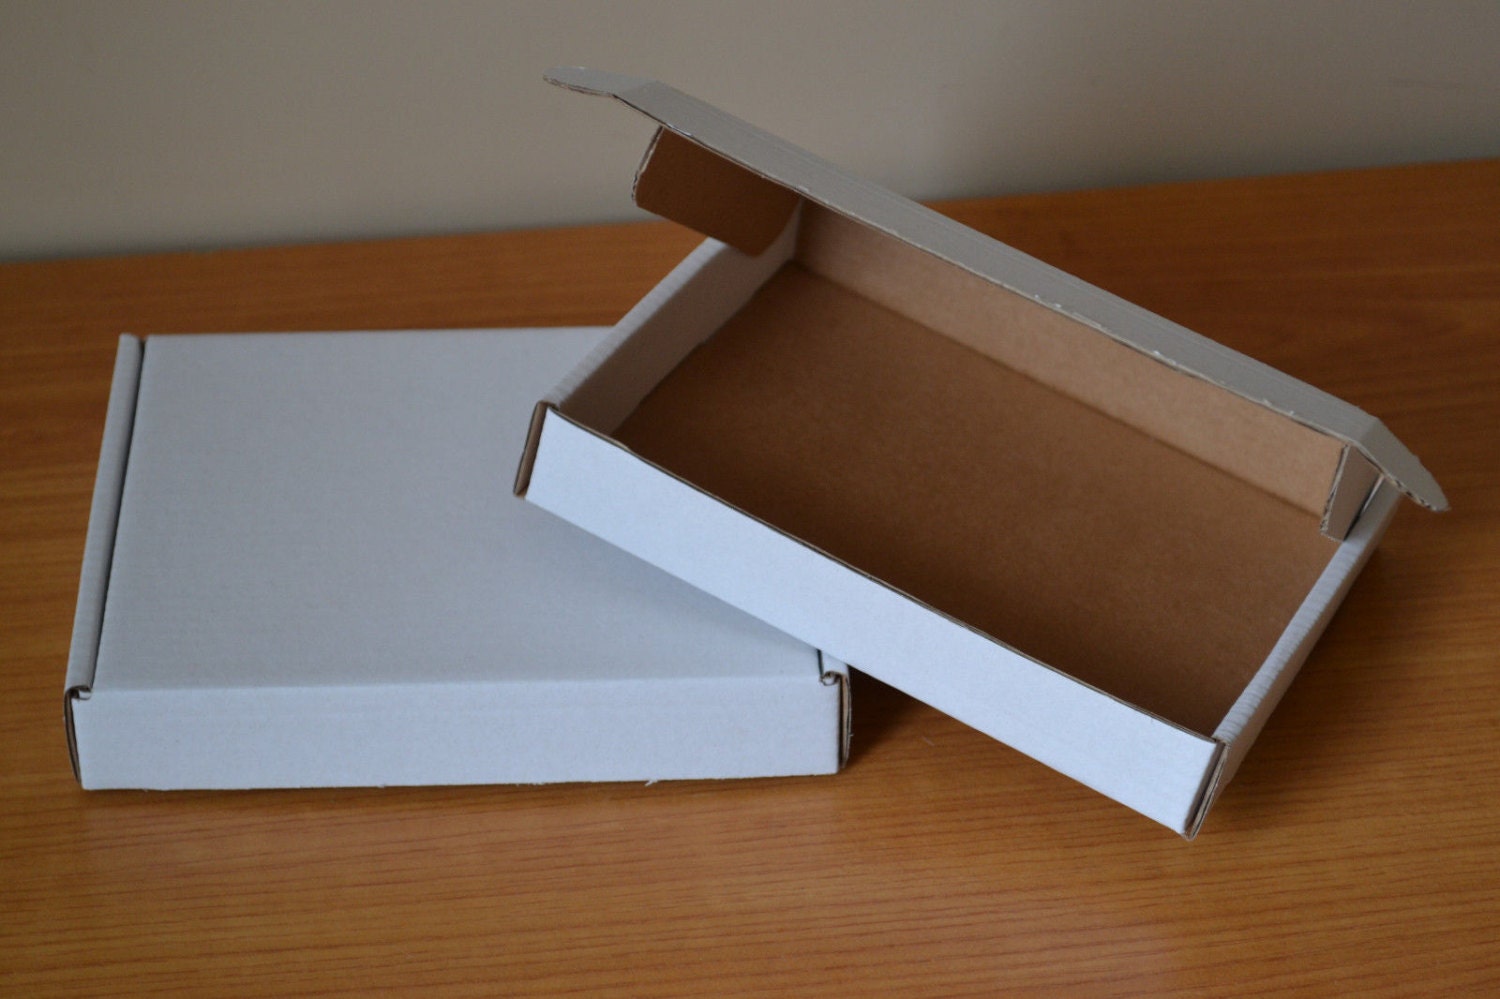 airmail box dimensions